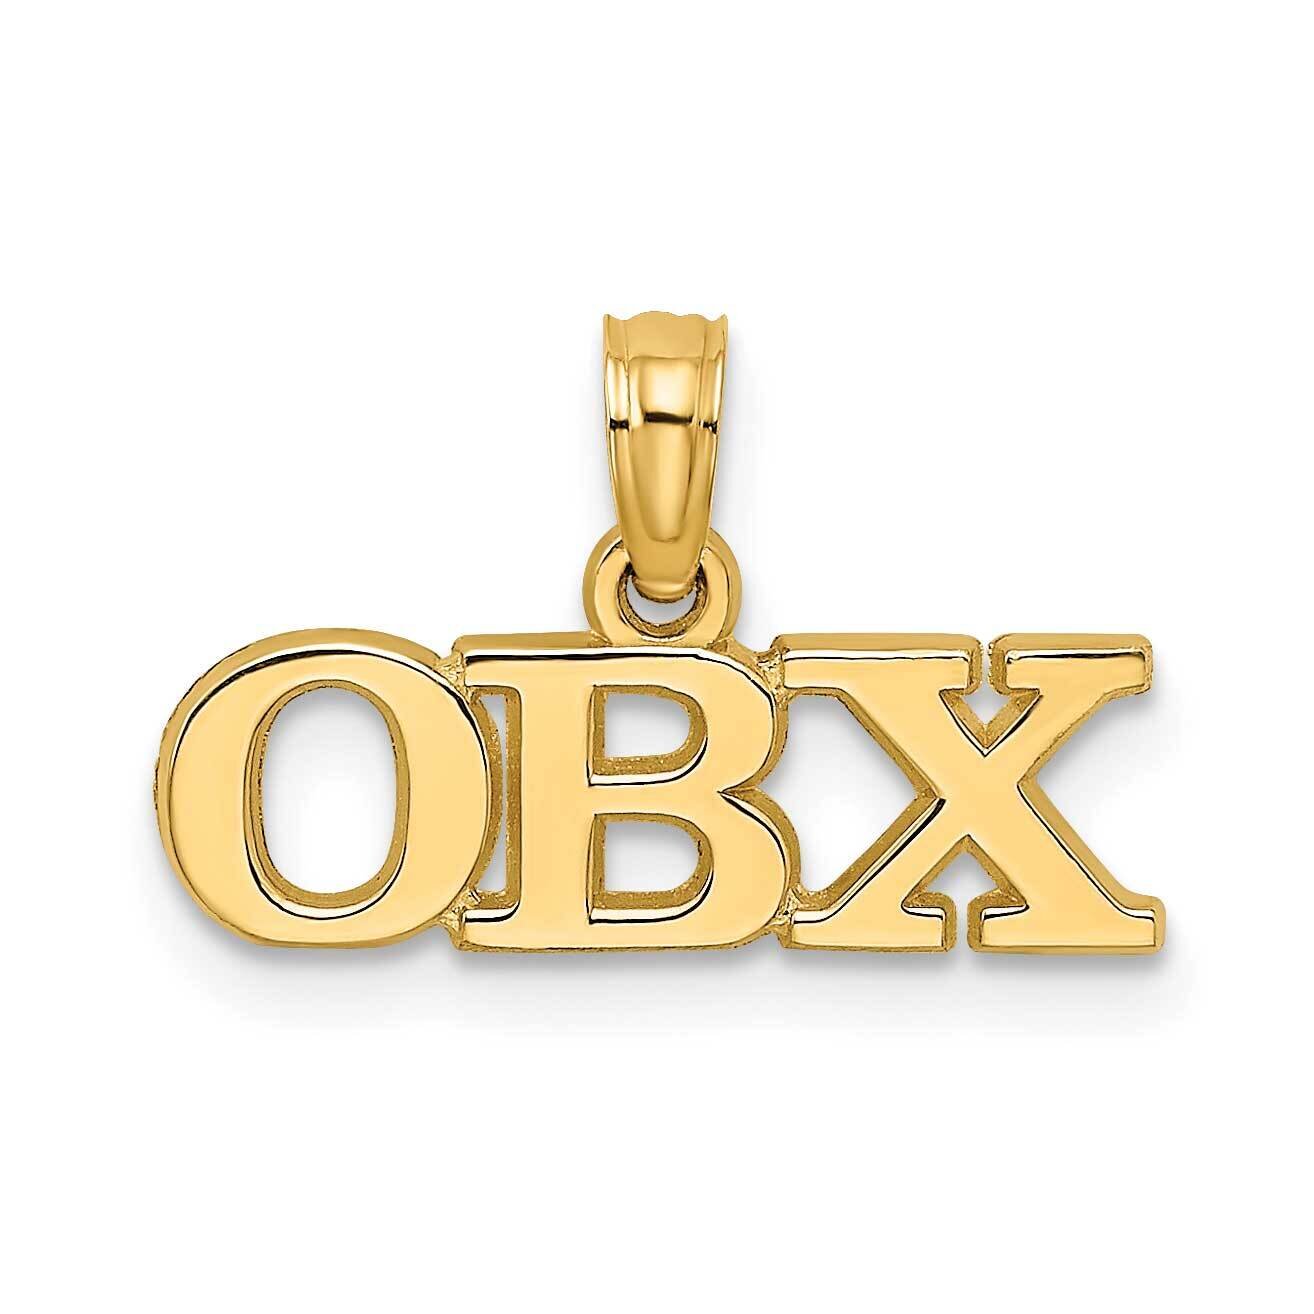 Obx Charm 14k Gold Polished K8670